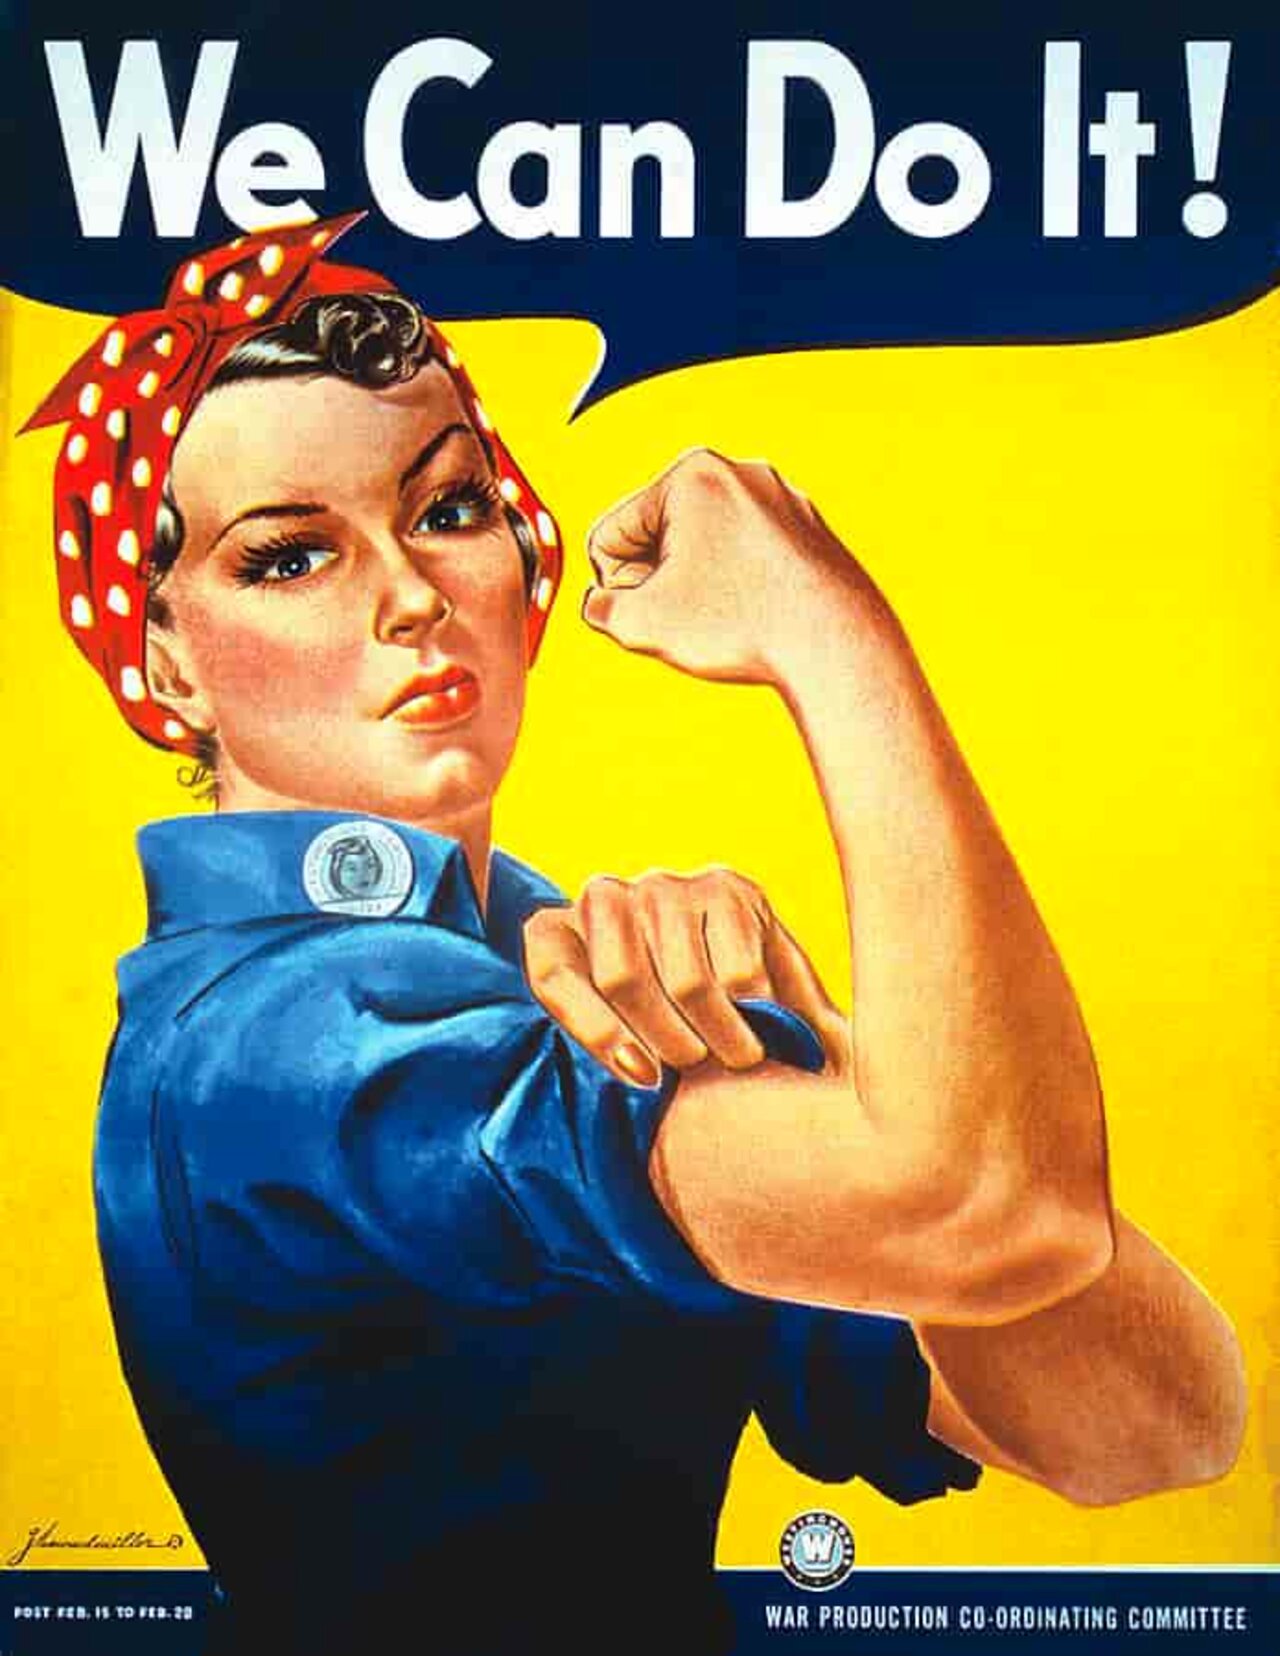 Den ikoniske posteren fra 1943 ble senere brukt som symbol for kvinnebevegelsen.